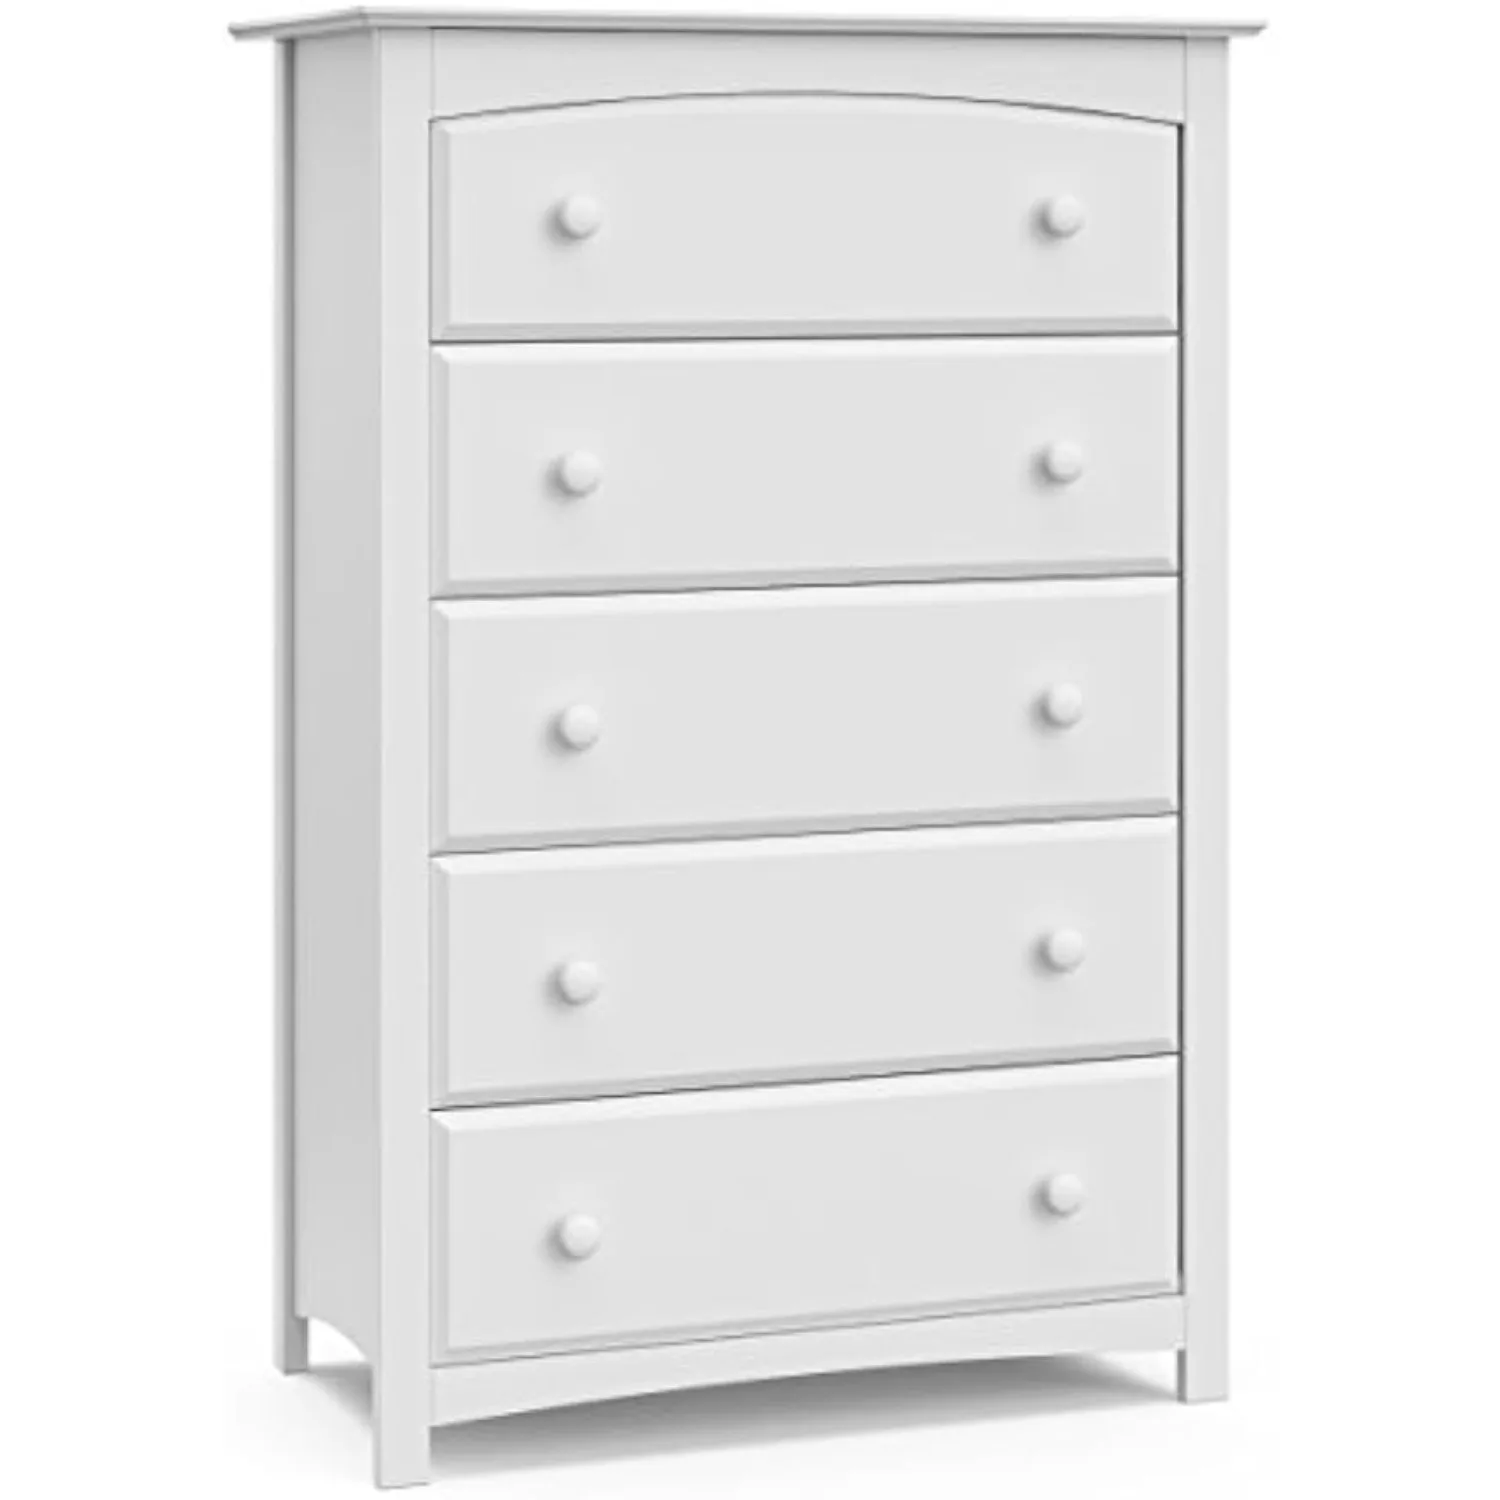 

Storkcraft Kenton 5 Drawer Dresser (White) for Kids Bedroom Nursery Dresser Organizer Chest of Drawers for Children’s Bedroom US